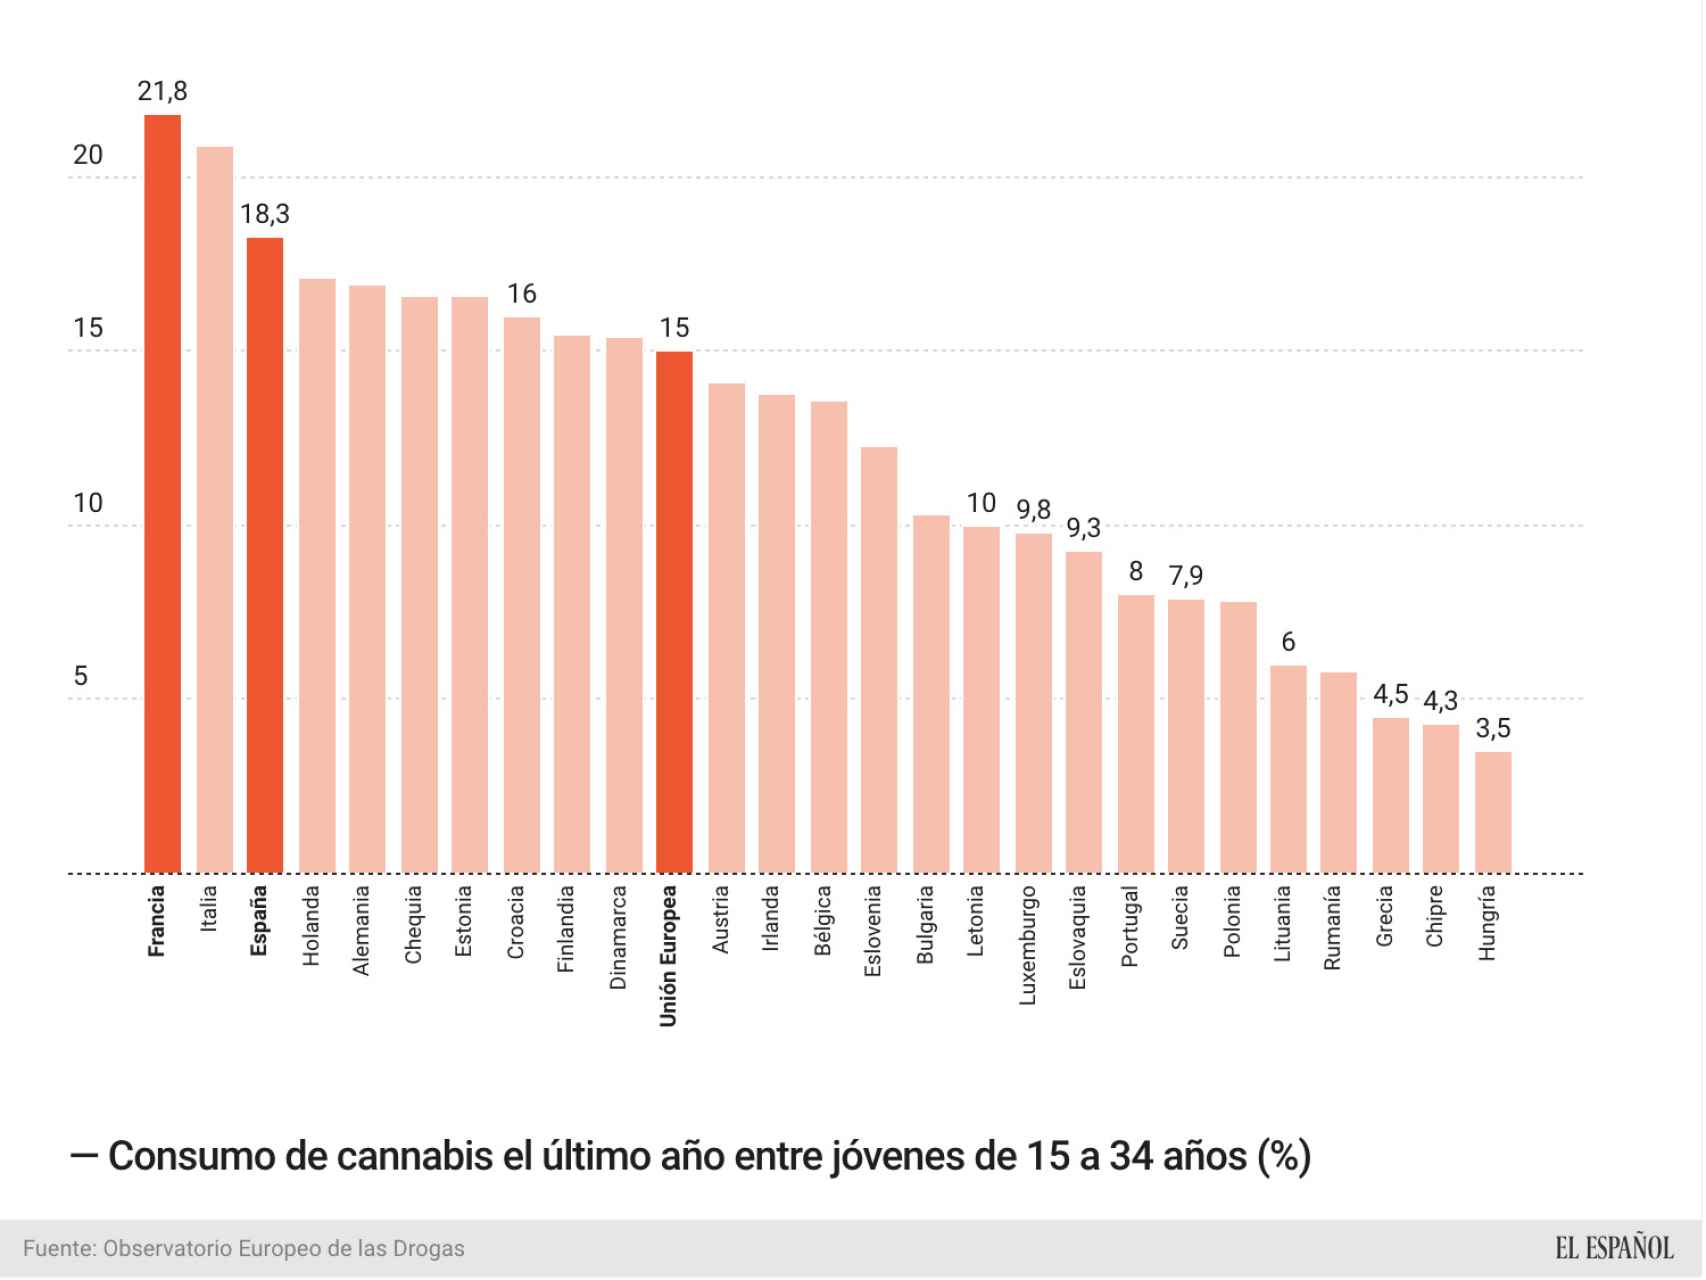 Consumo de cannabis entre los jóvenes europeos